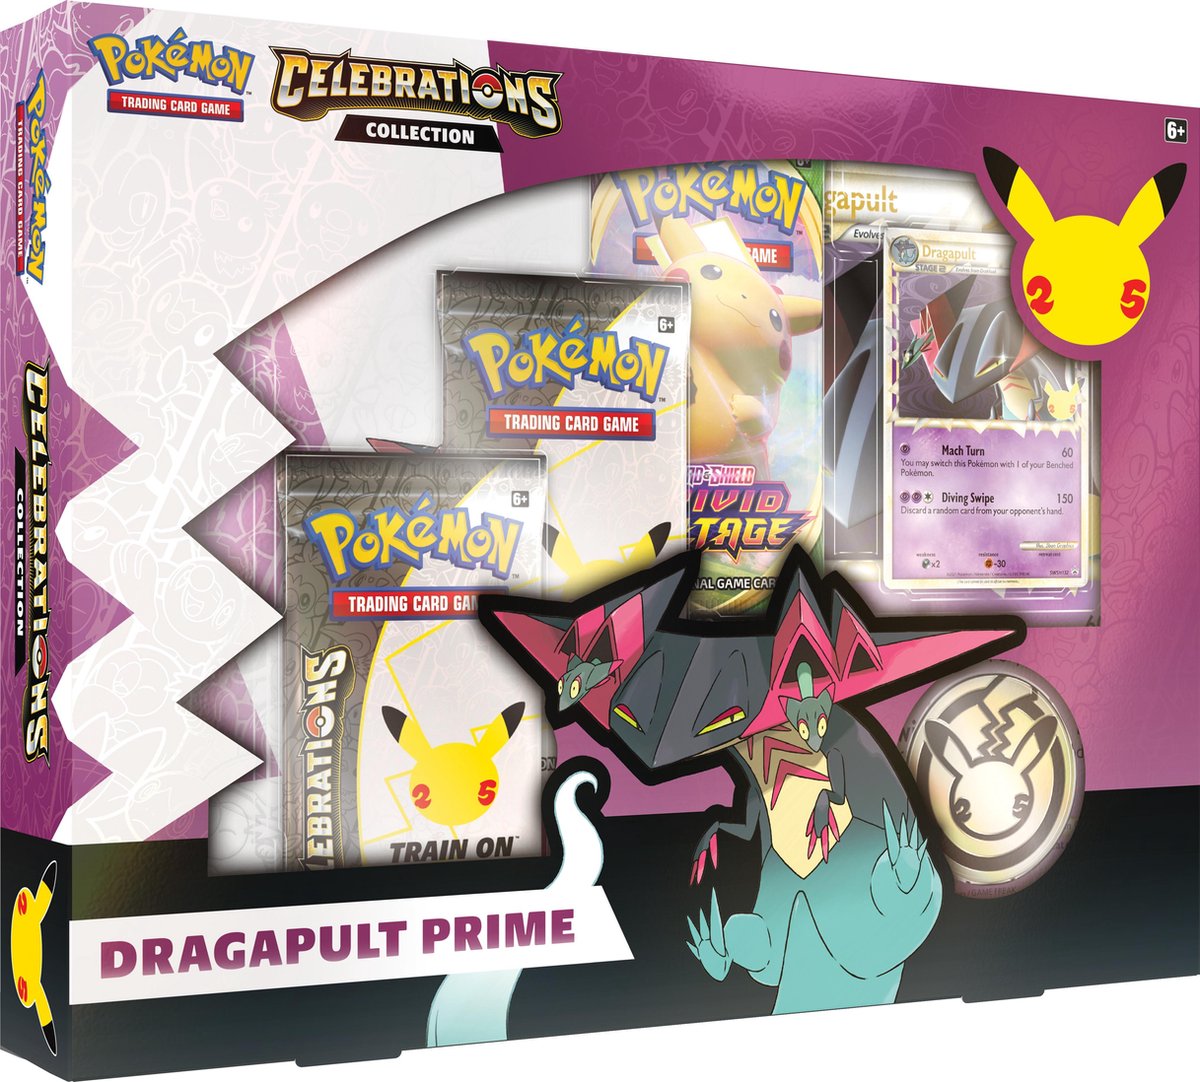 Dragapult Prime Collection - Celebrations - Pokémon TCG 2